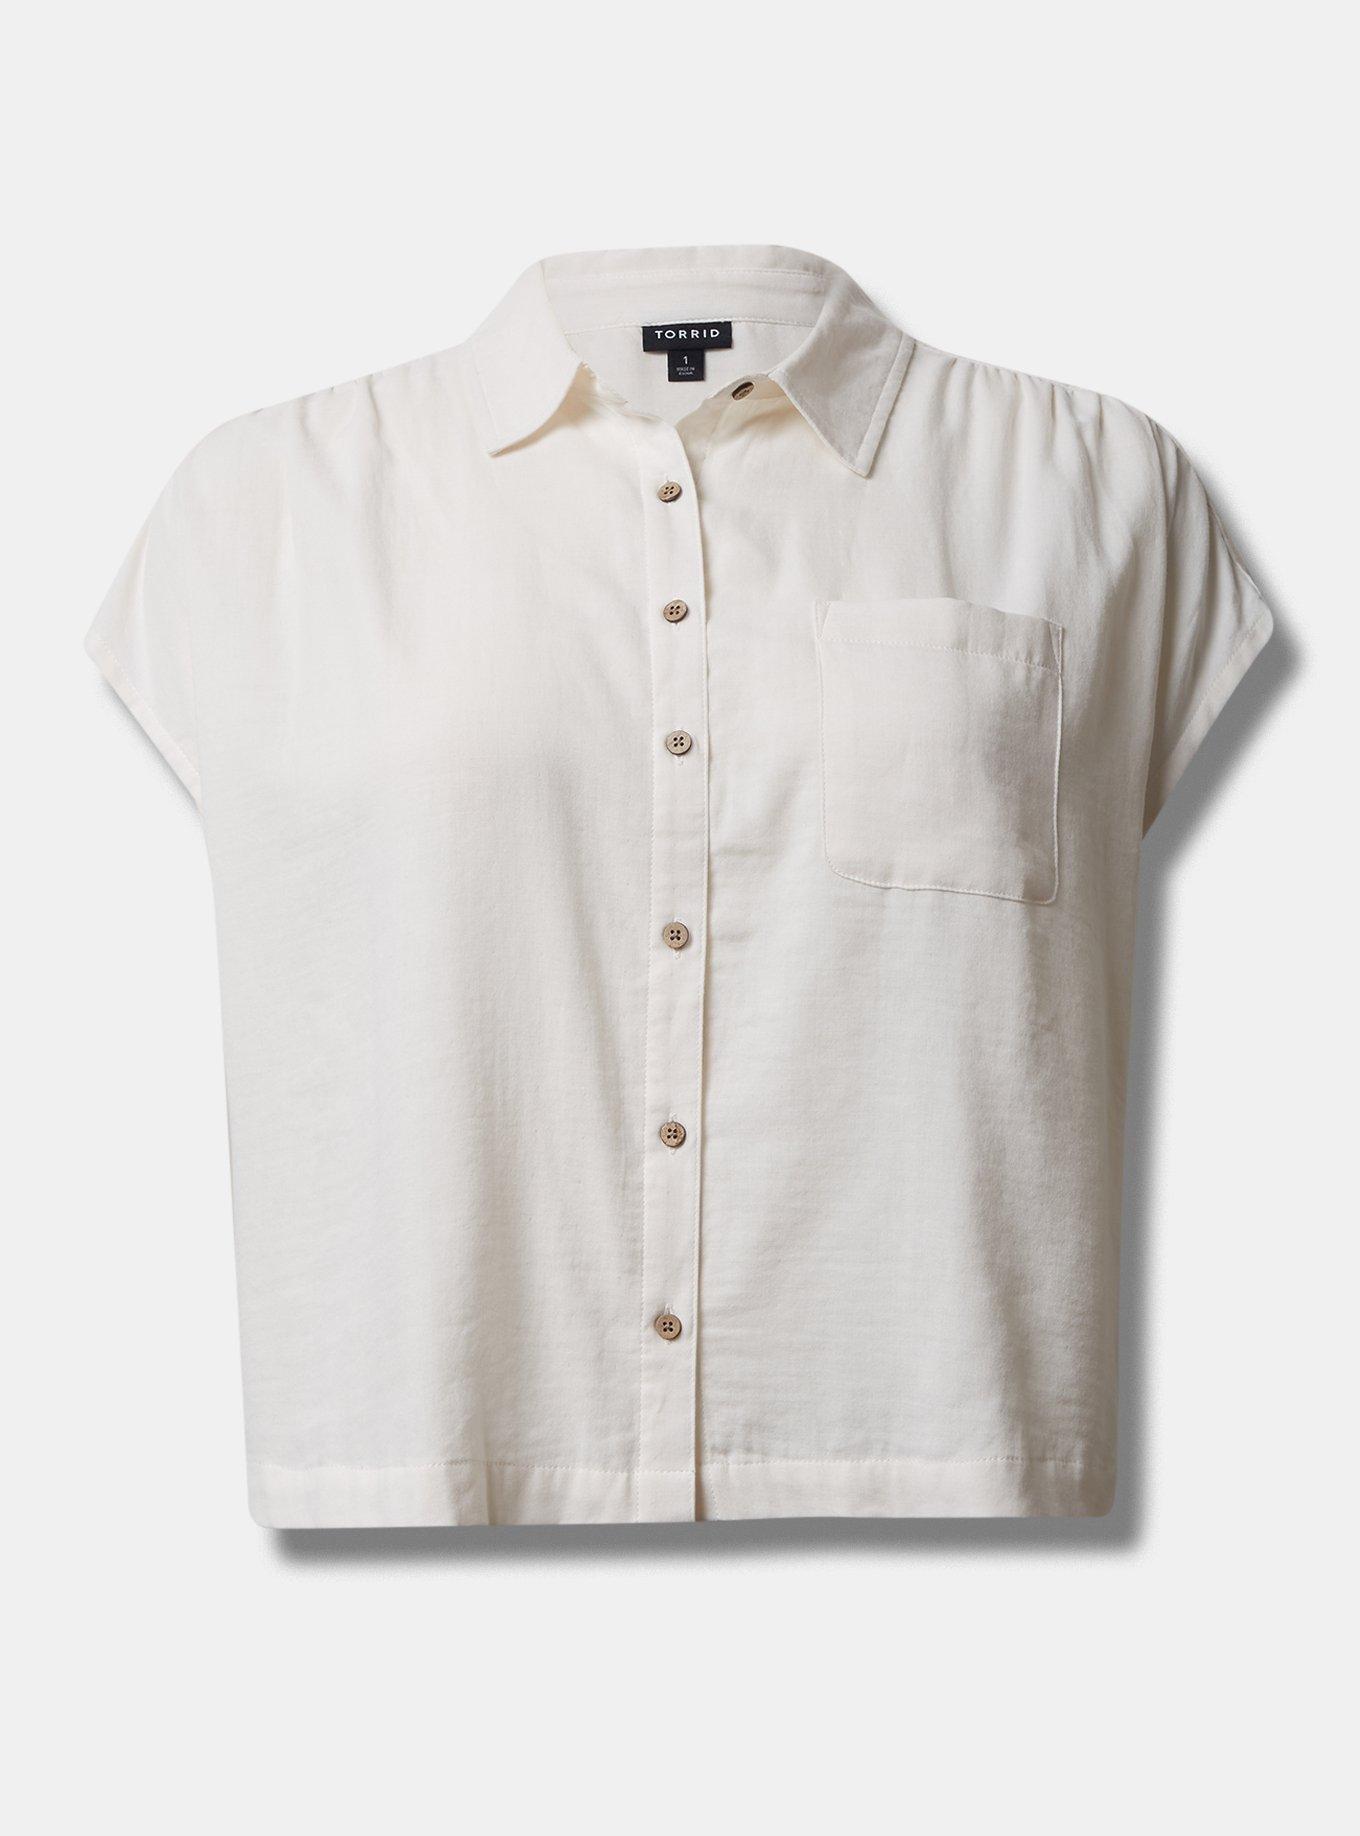 TORRID Double Gauze Button Up Short Sleeve Shirt Top